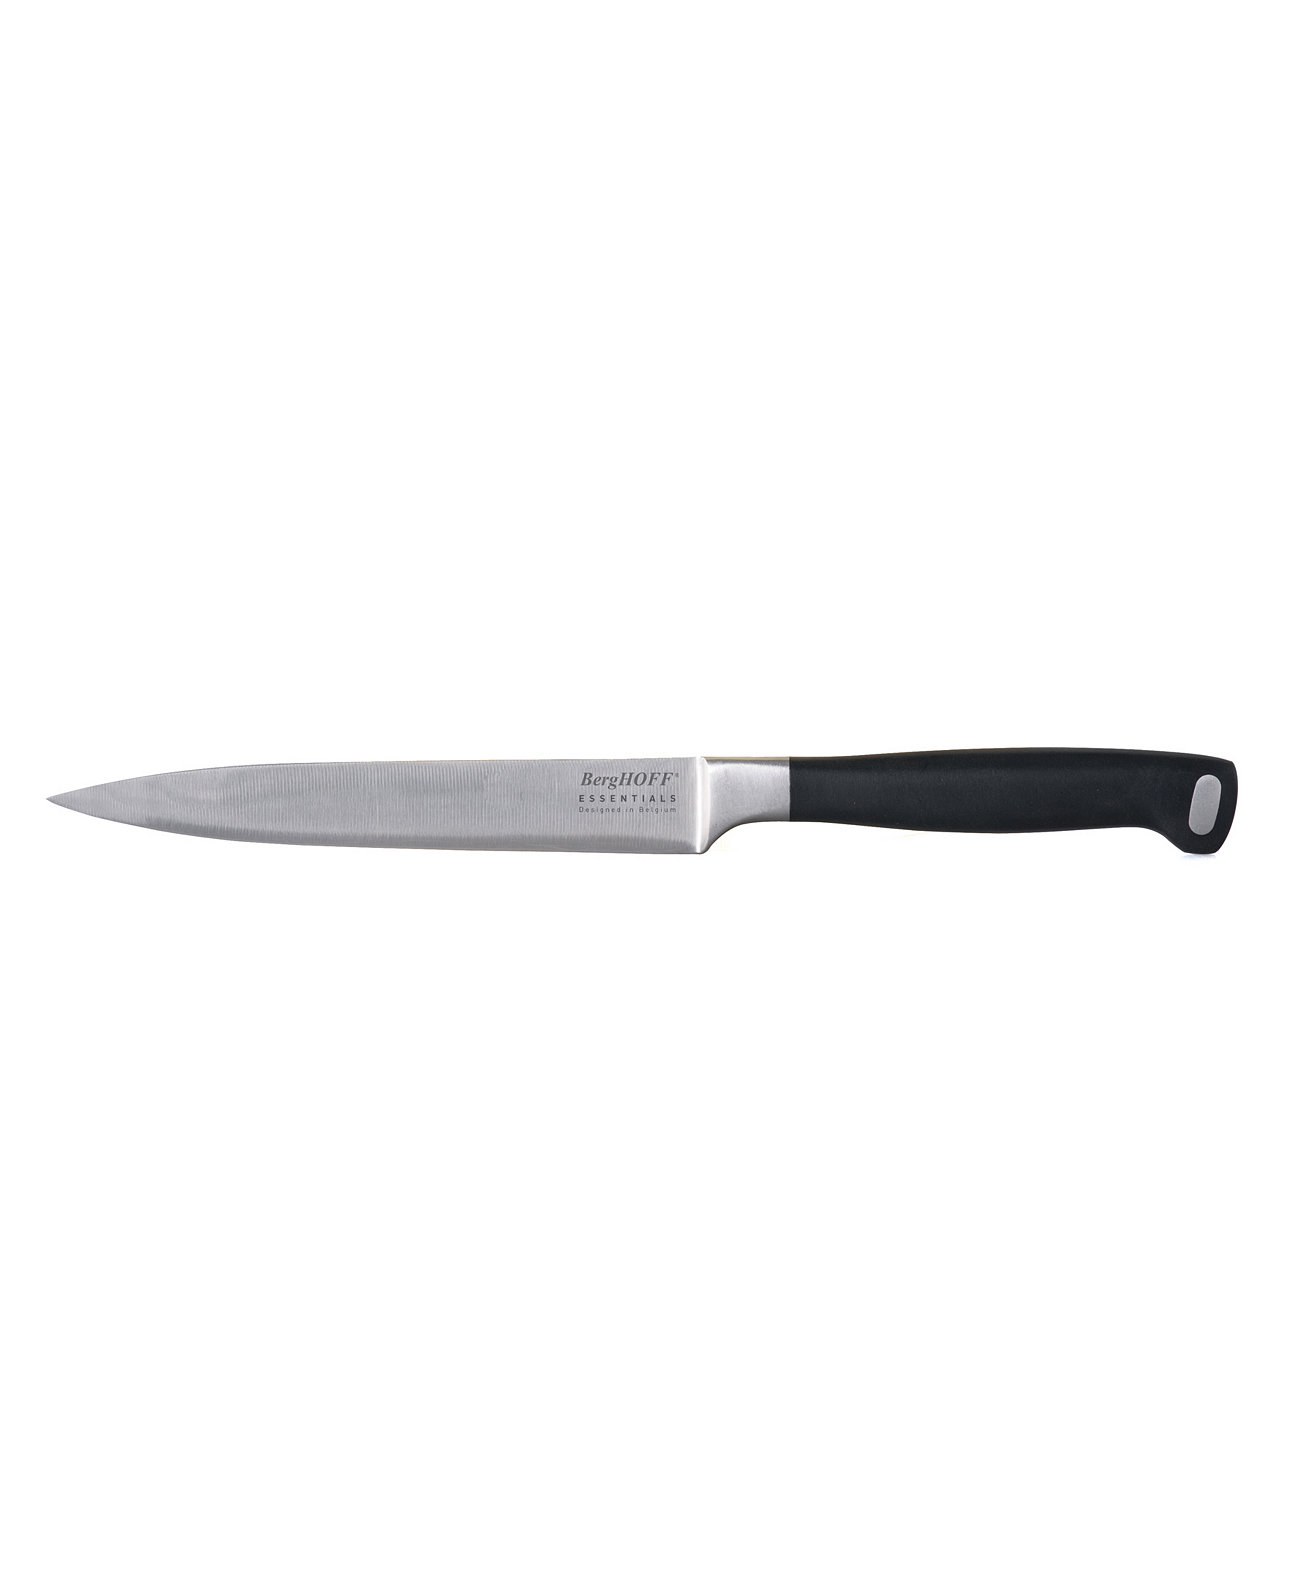 Универсальный нож Essentials Collection Gourmet 4,75 дюйма BergHOFF